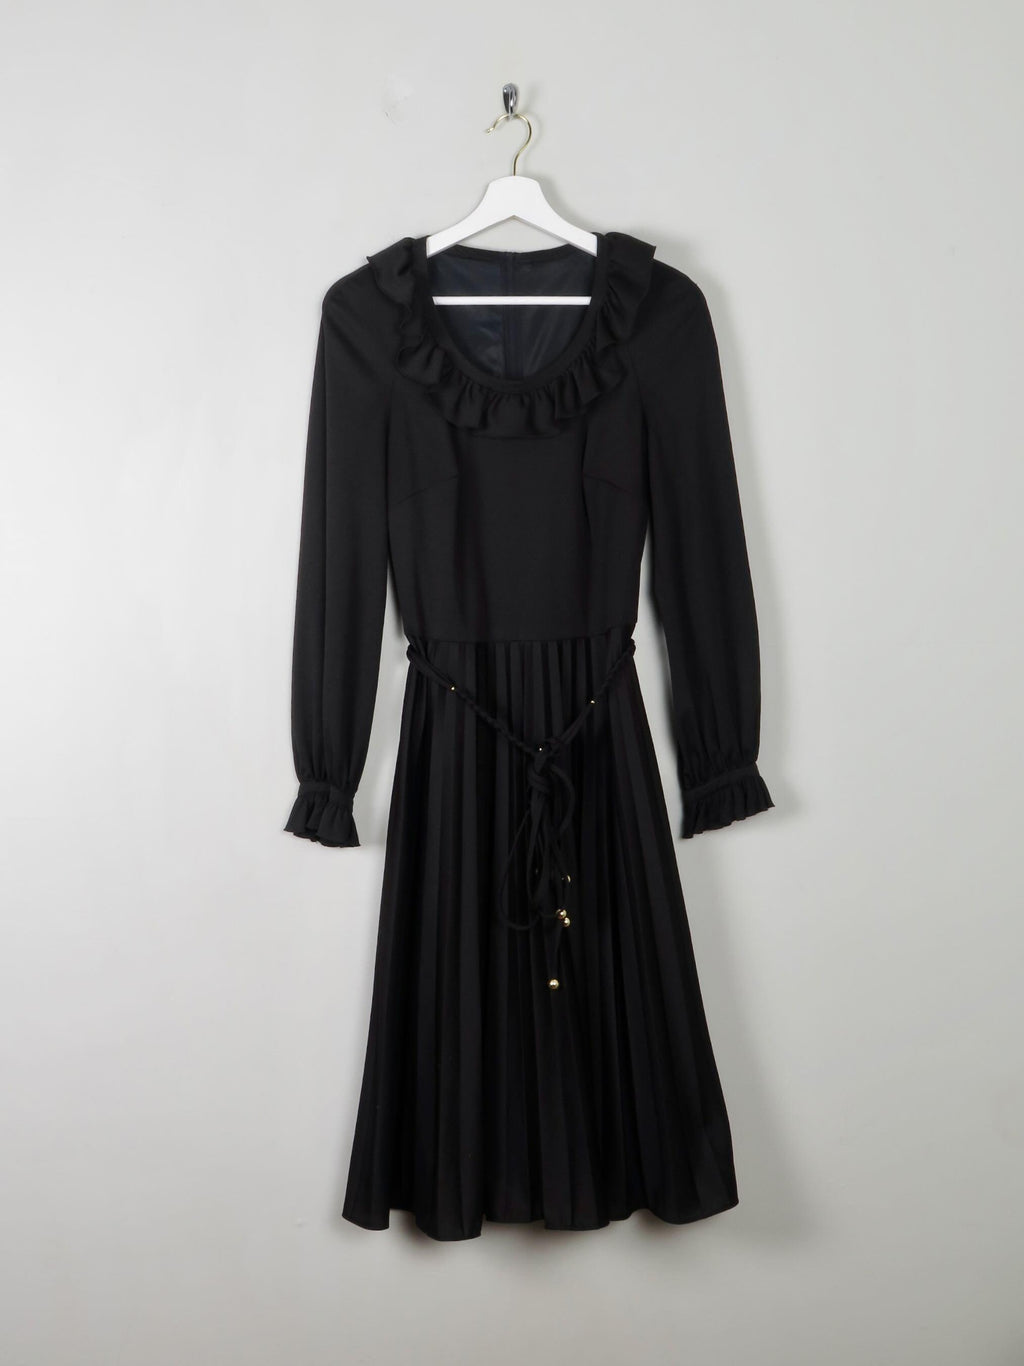 Vintage 1970s Black Dress S - The Harlequin